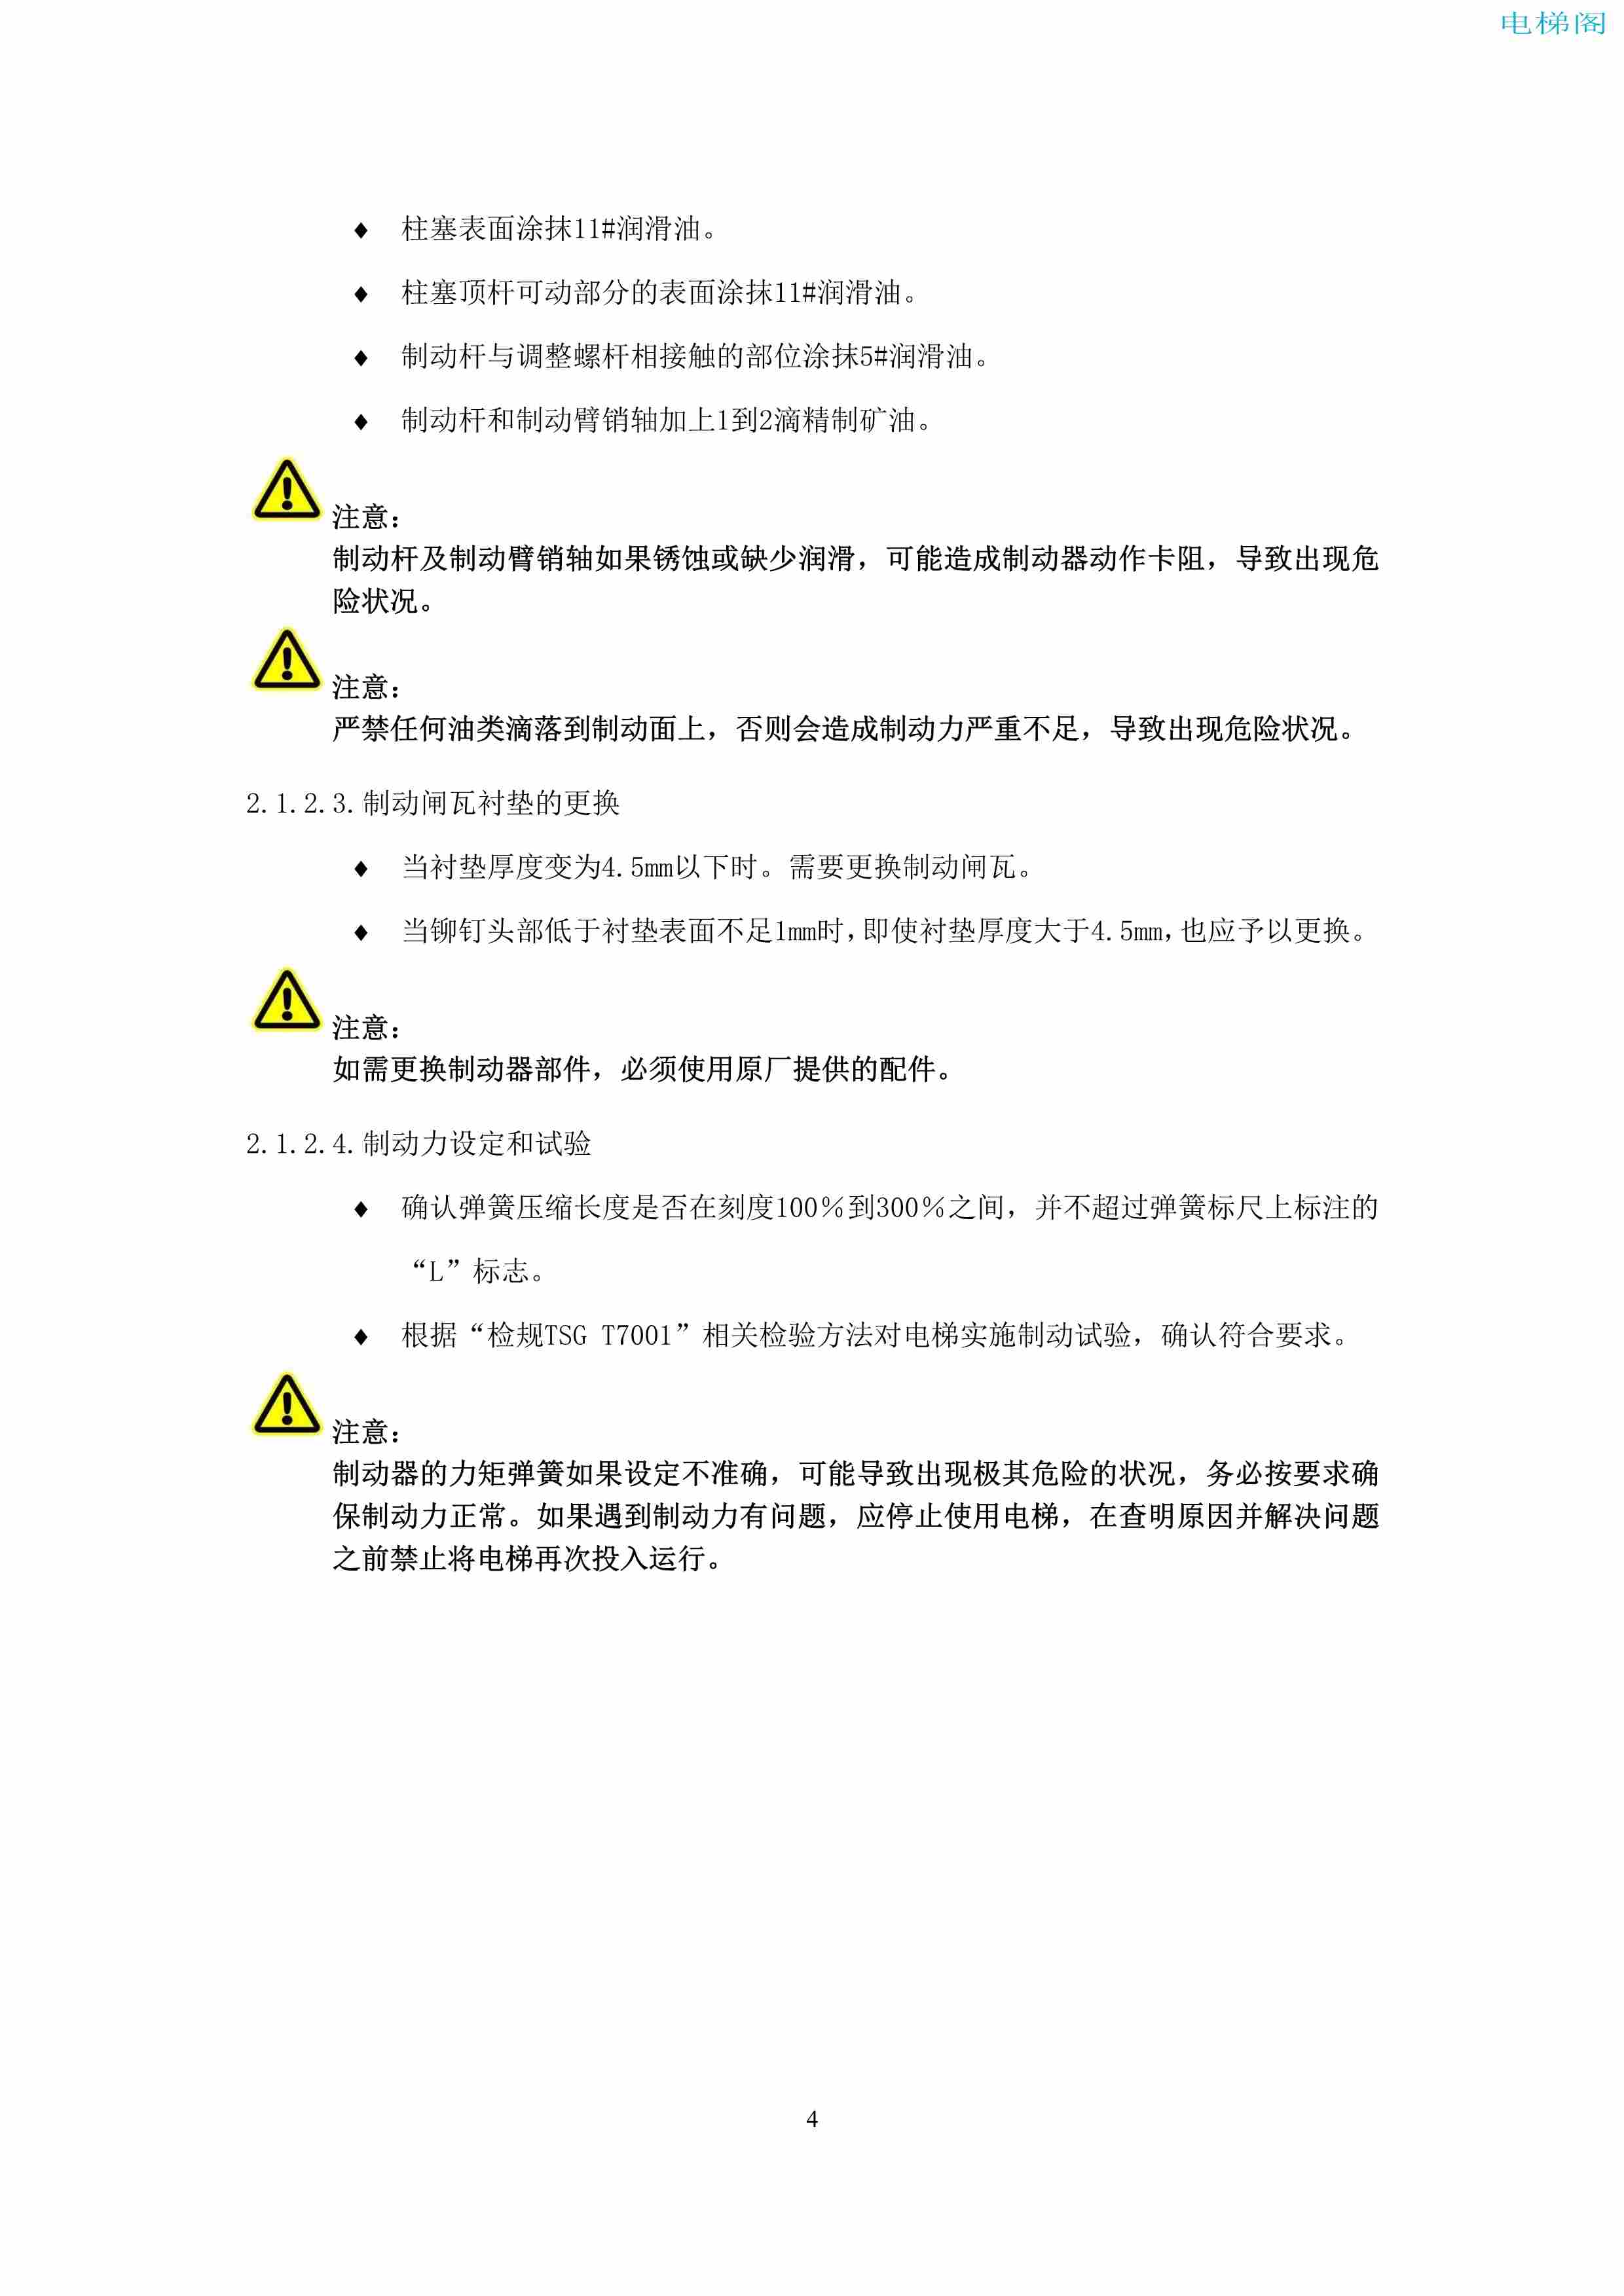 上海三菱电梯有限公司电梯制动器维护作业要领汇编_6.jpg